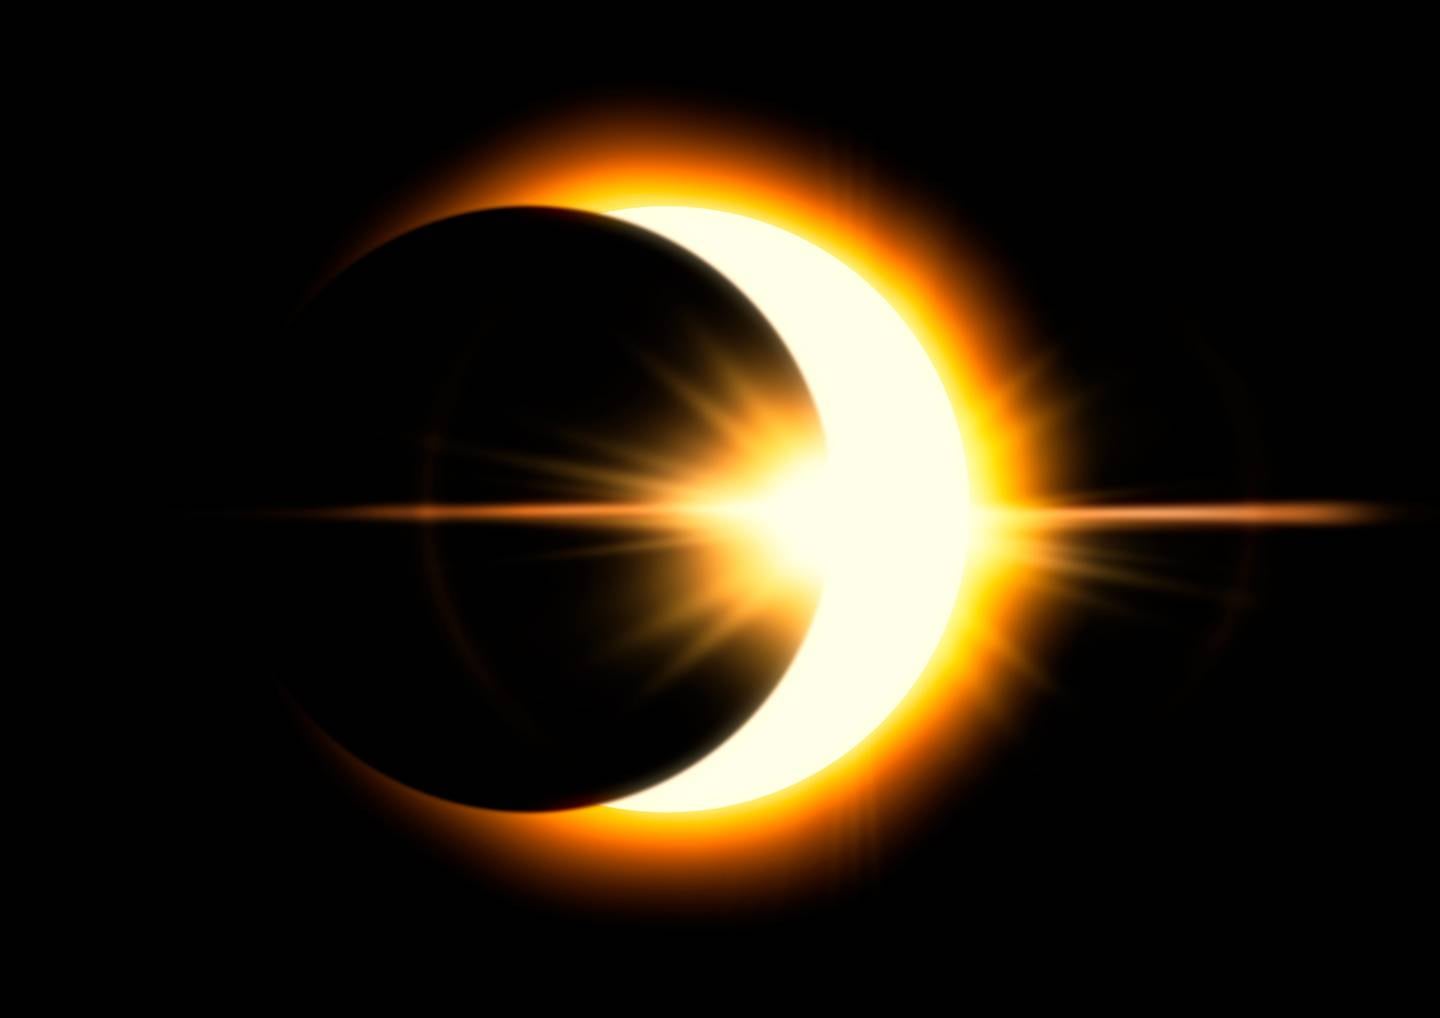 Vista el vecino estado del Norte y prepárate para observar de manera segura el próximo eclipse solar.